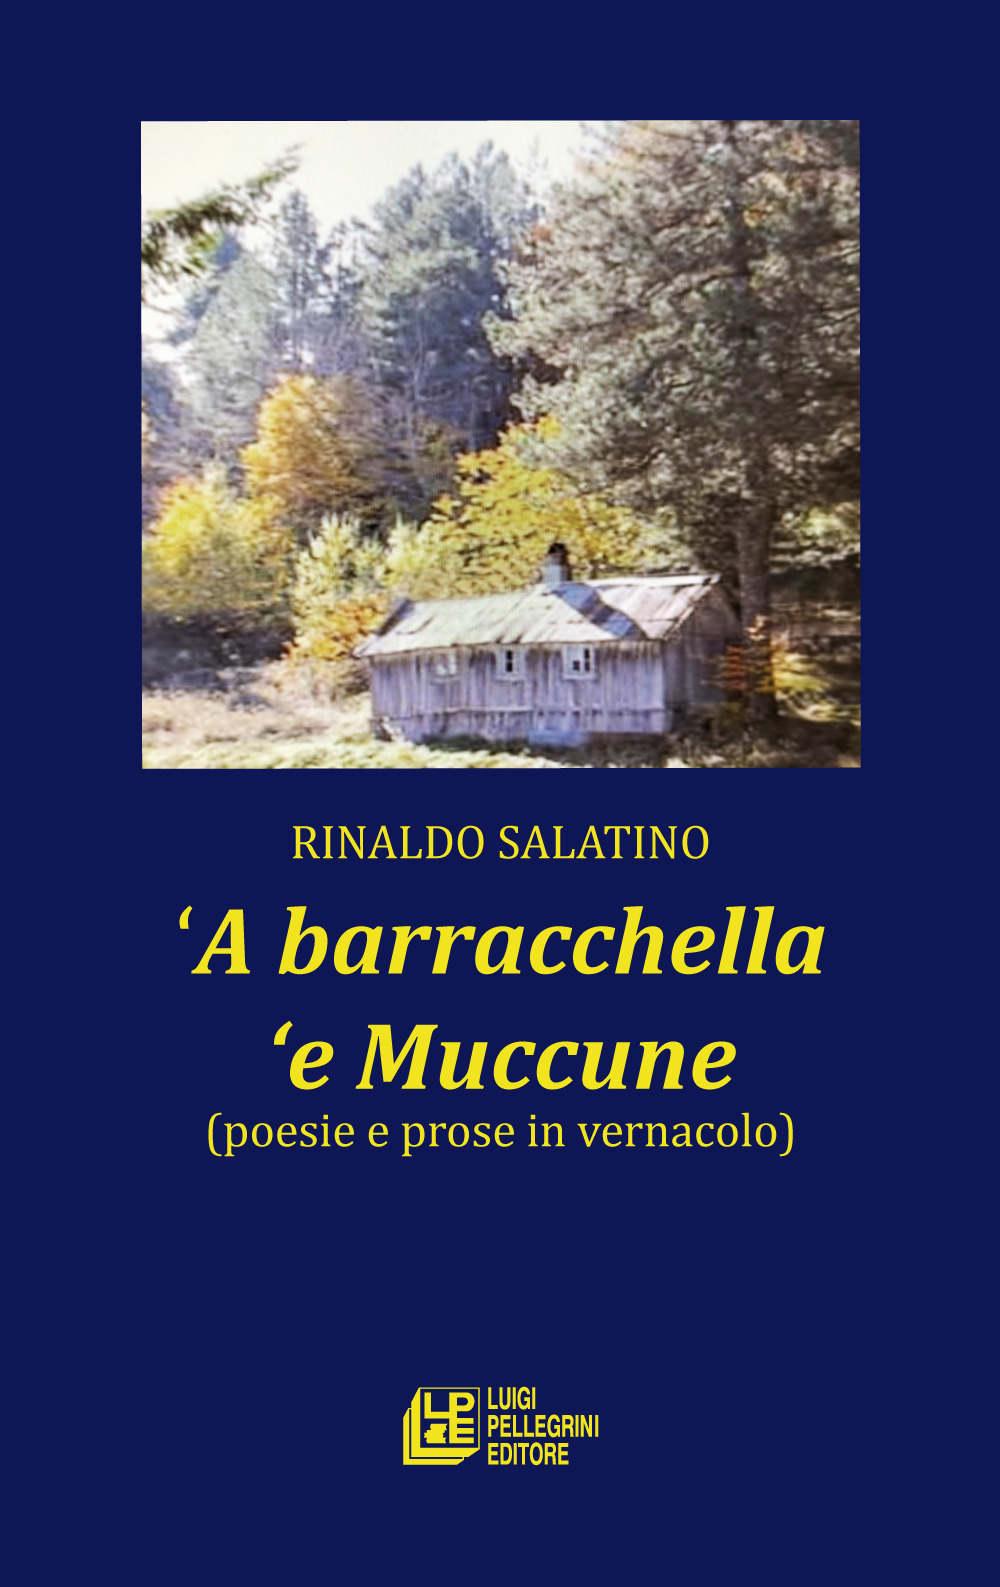 'A barracchella 'e Muccune (poesie e prose in vernacolo)